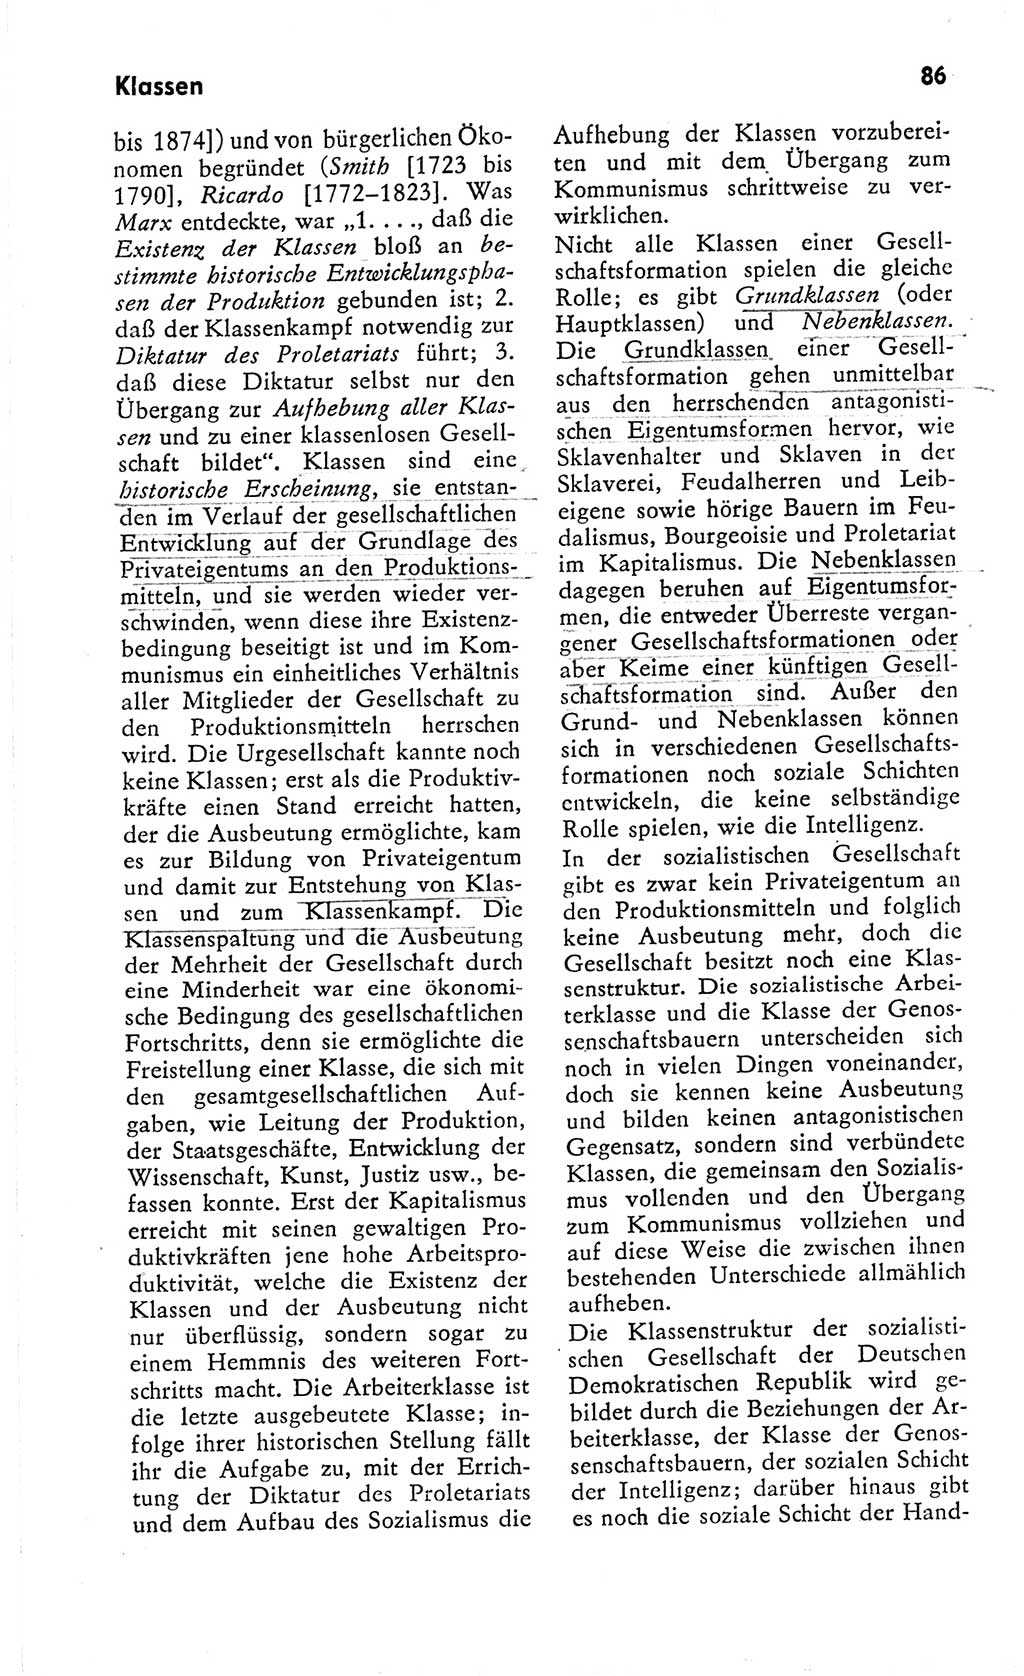 Kleines Wörterbuch der marxistisch-leninistischen Philosophie [Deutsche Demokratische Republik (DDR)] 1966, Seite 86 (Kl. Wb. ML Phil. DDR 1966, S. 86)